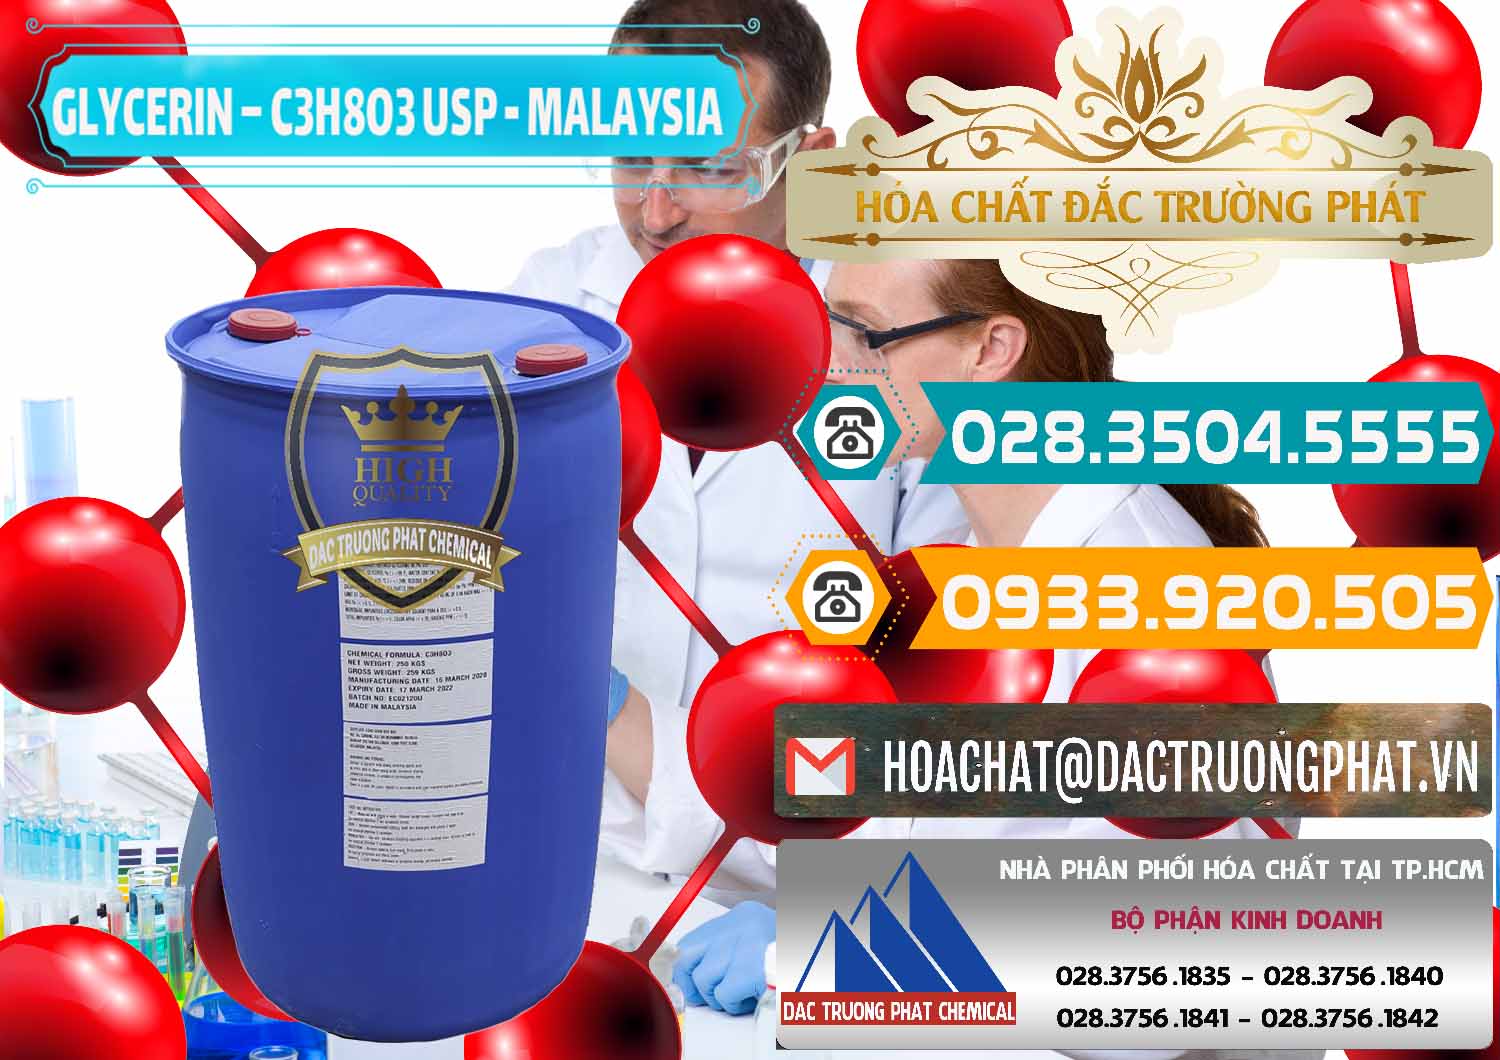 Công ty chuyên kinh doanh - bán Glycerin – C3H8O3 USP Malaysia - 0233 - Cty cung cấp & phân phối hóa chất tại TP.HCM - congtyhoachat.vn